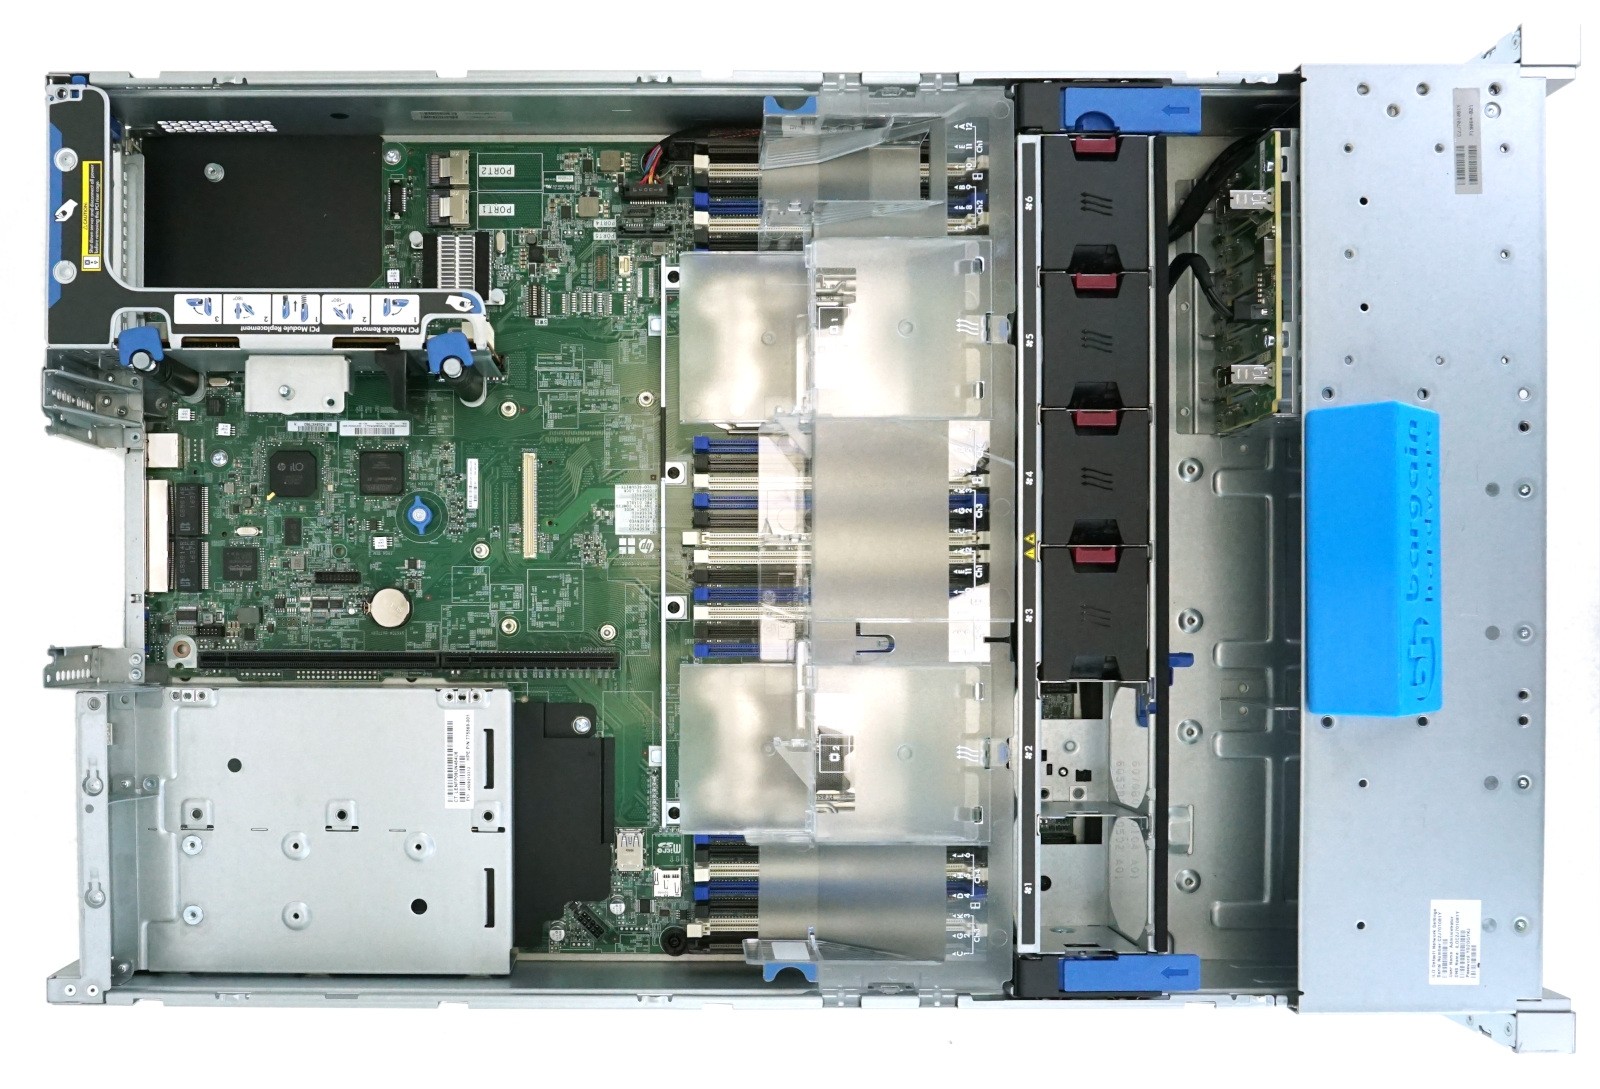 HP ProLiant DL380 Gen9 8-Bay 2U Rackmount Server | Configure-to-Order